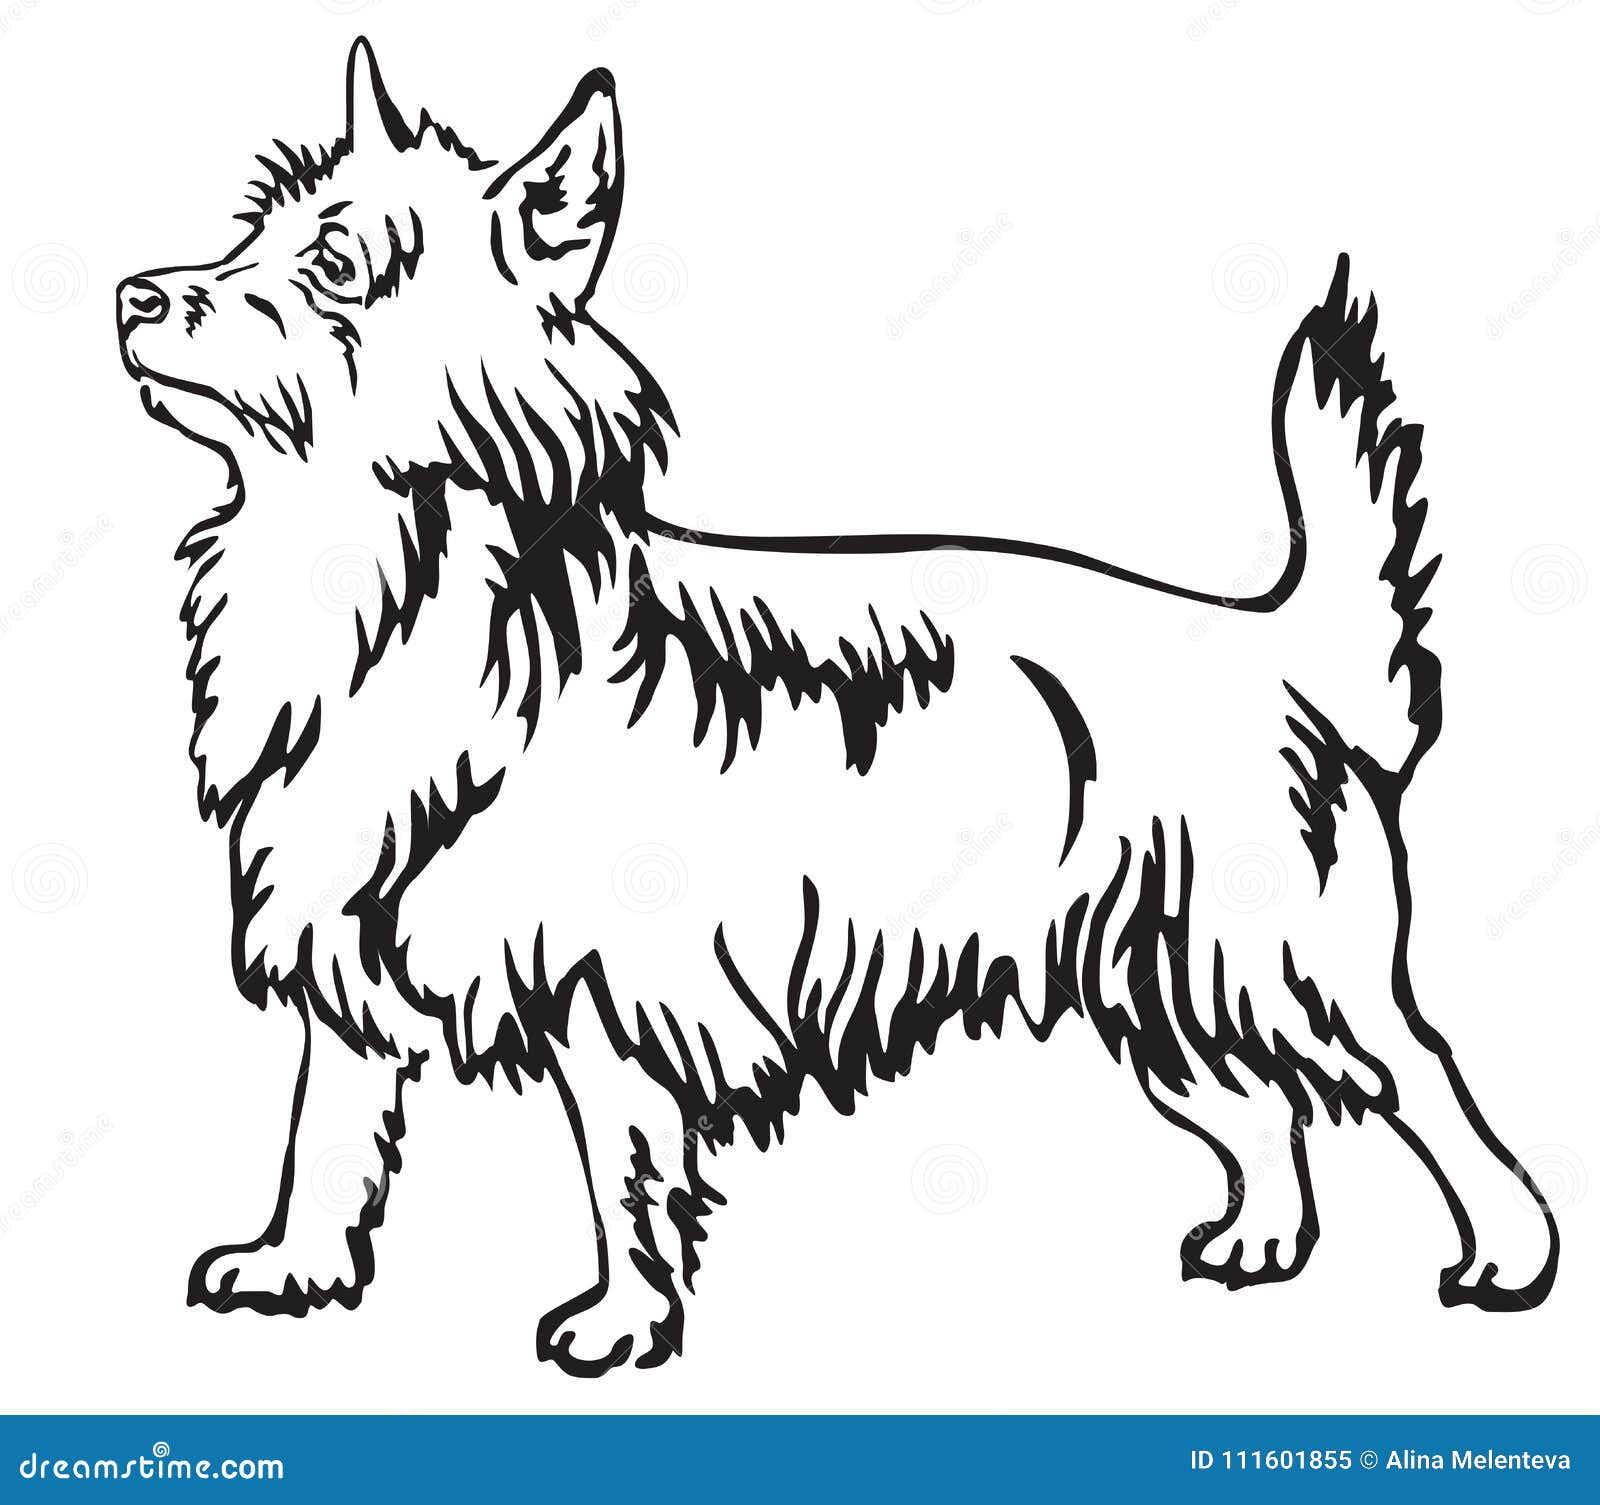 Australian Terrier Stock Illustrations 273 Australian Terrier Stock Illustrations Vectors Clipart Dreamstime